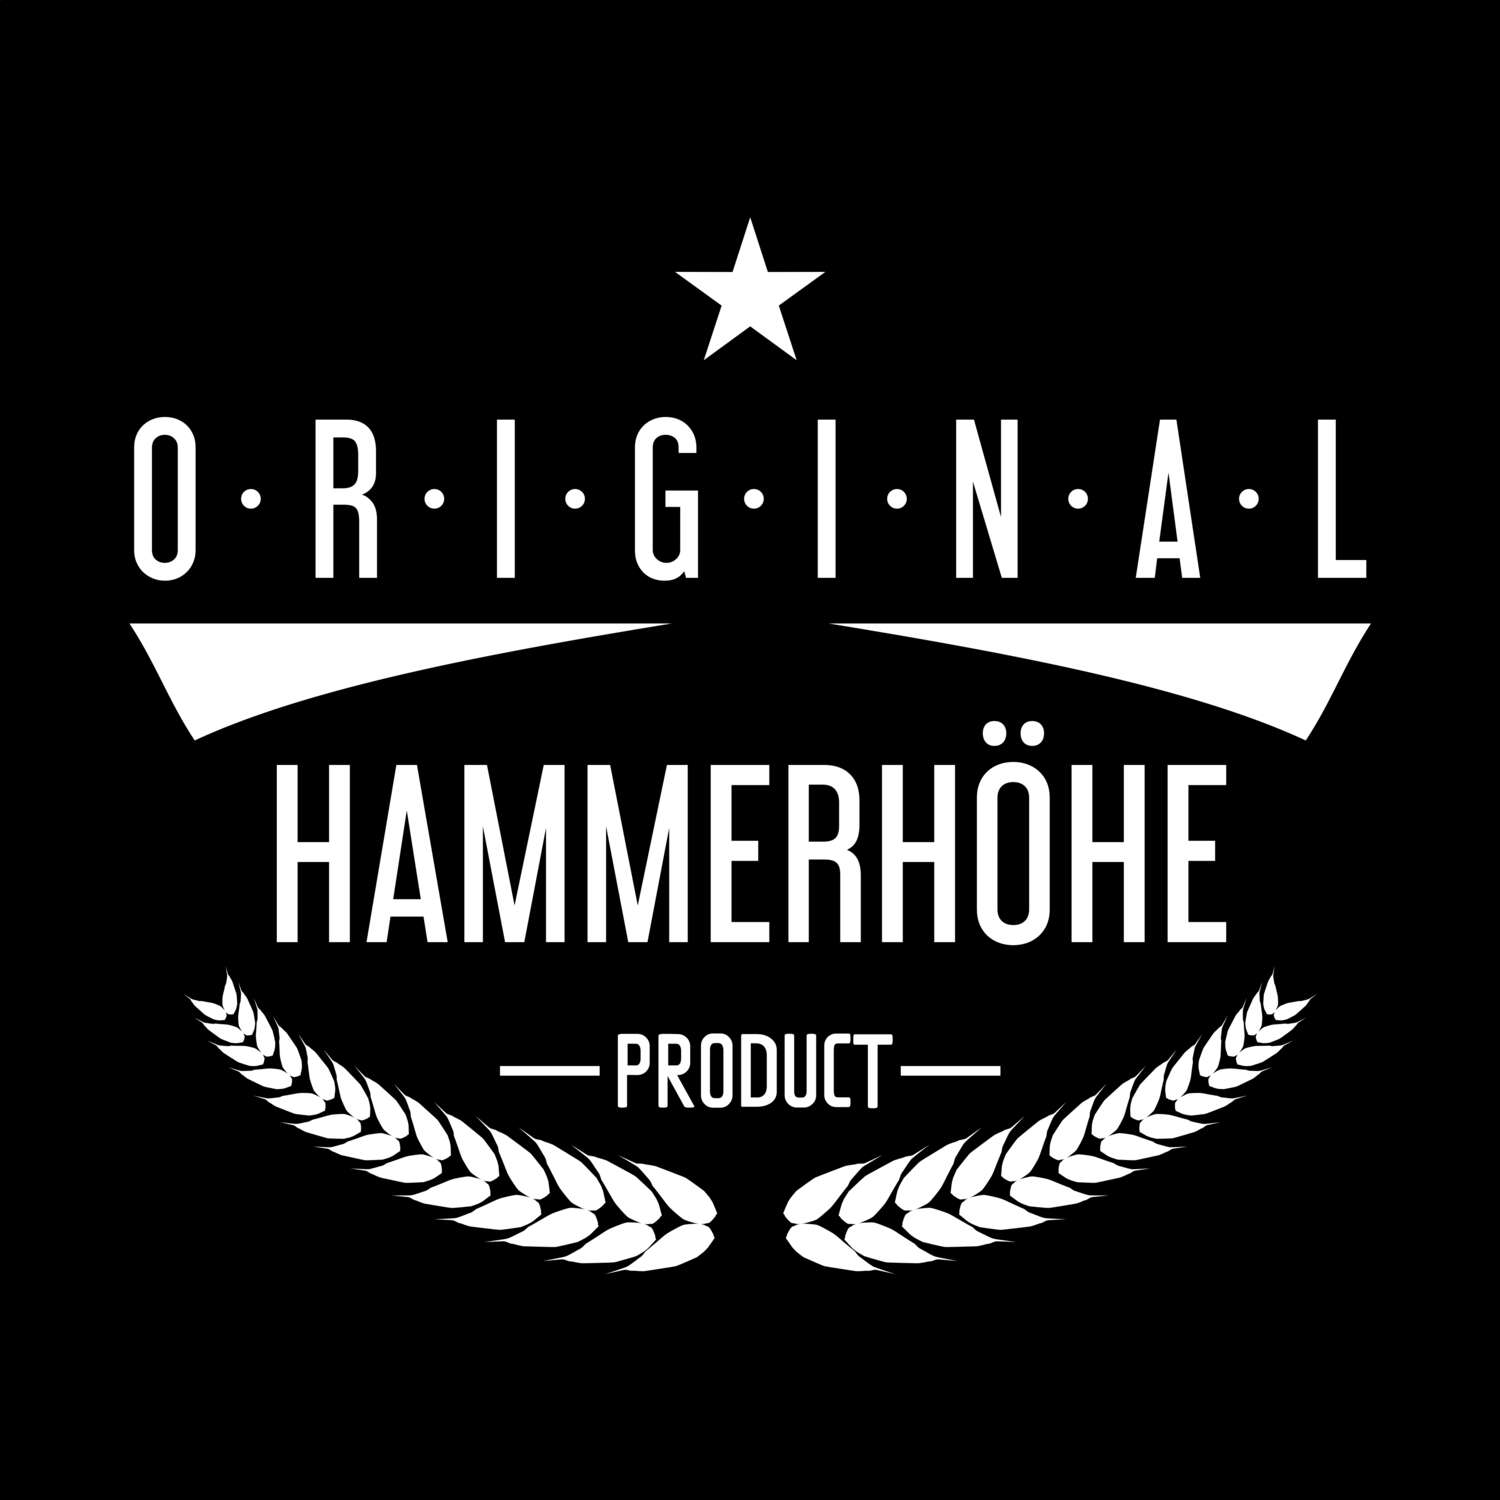 Hammerhöhe T-Shirt »Original Product«